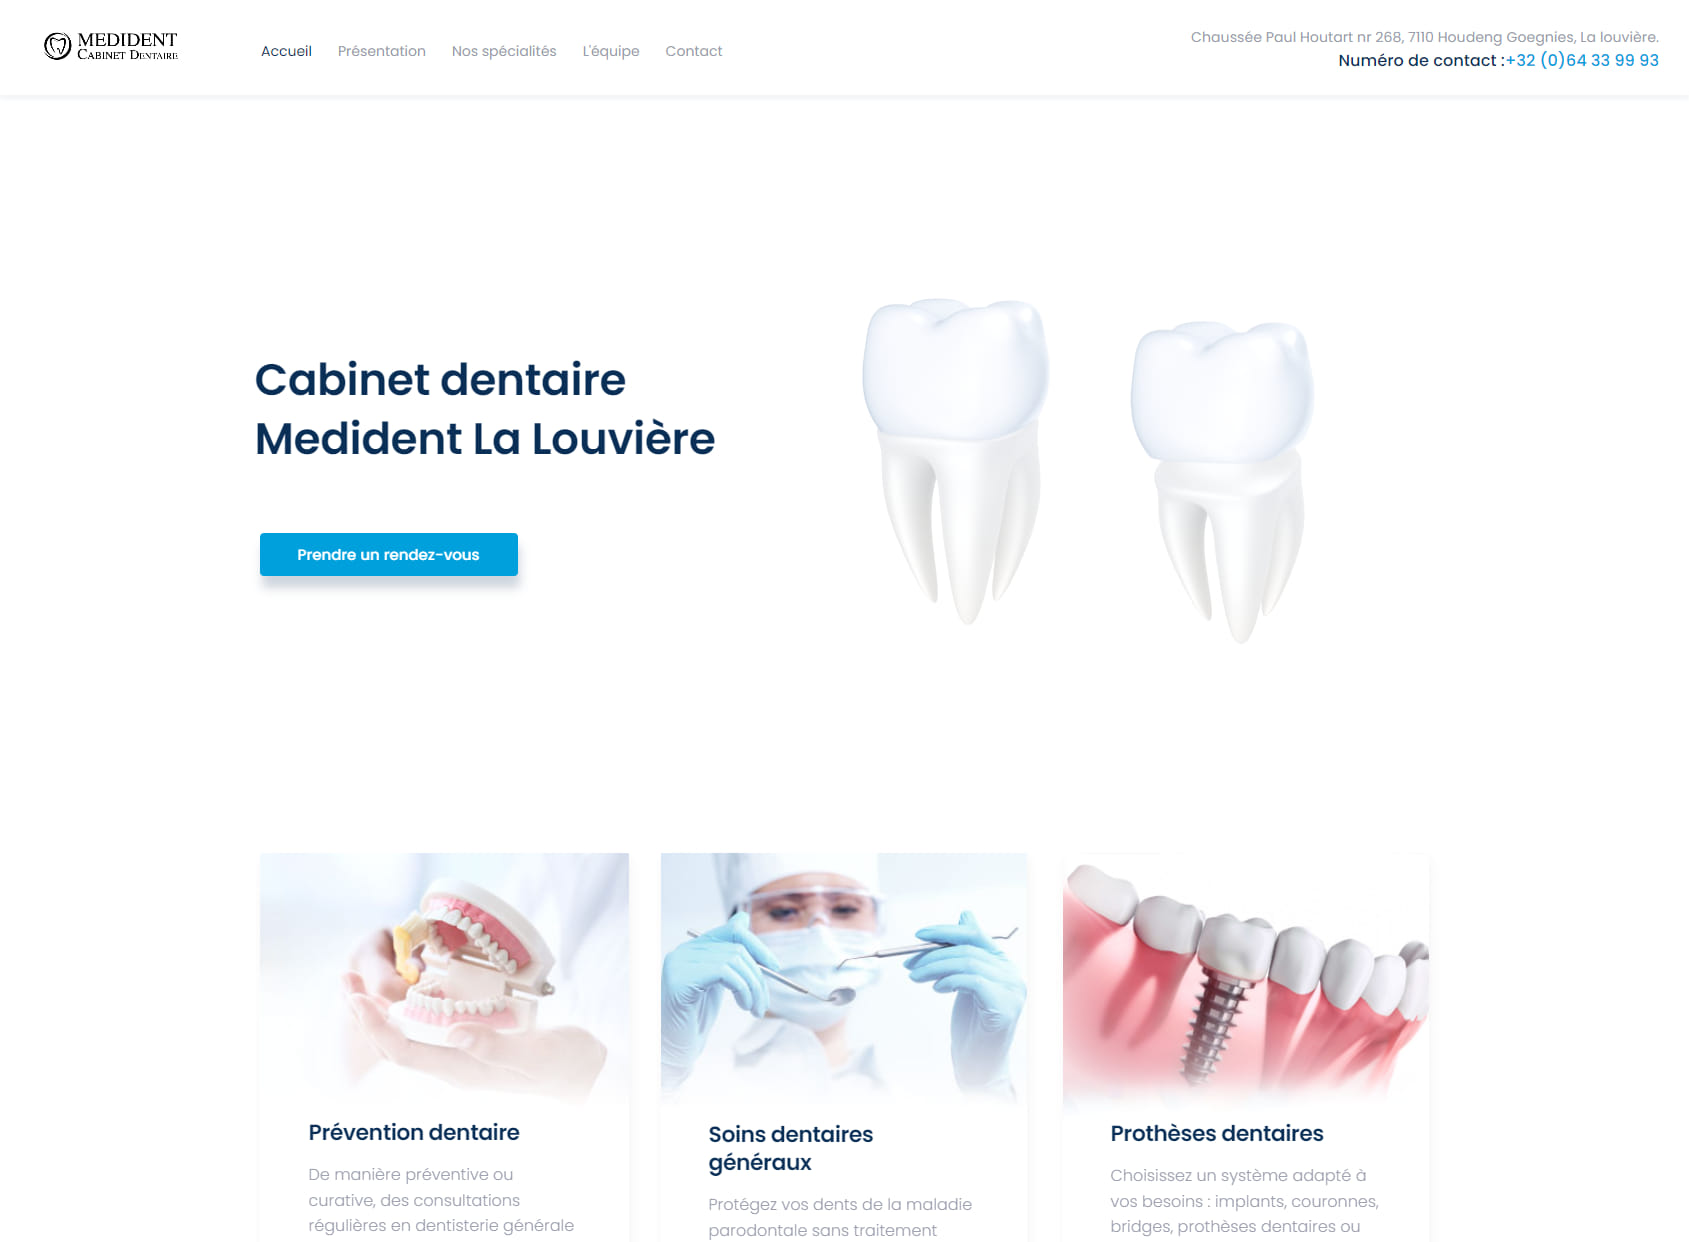 Dentiste Medident la Louvière